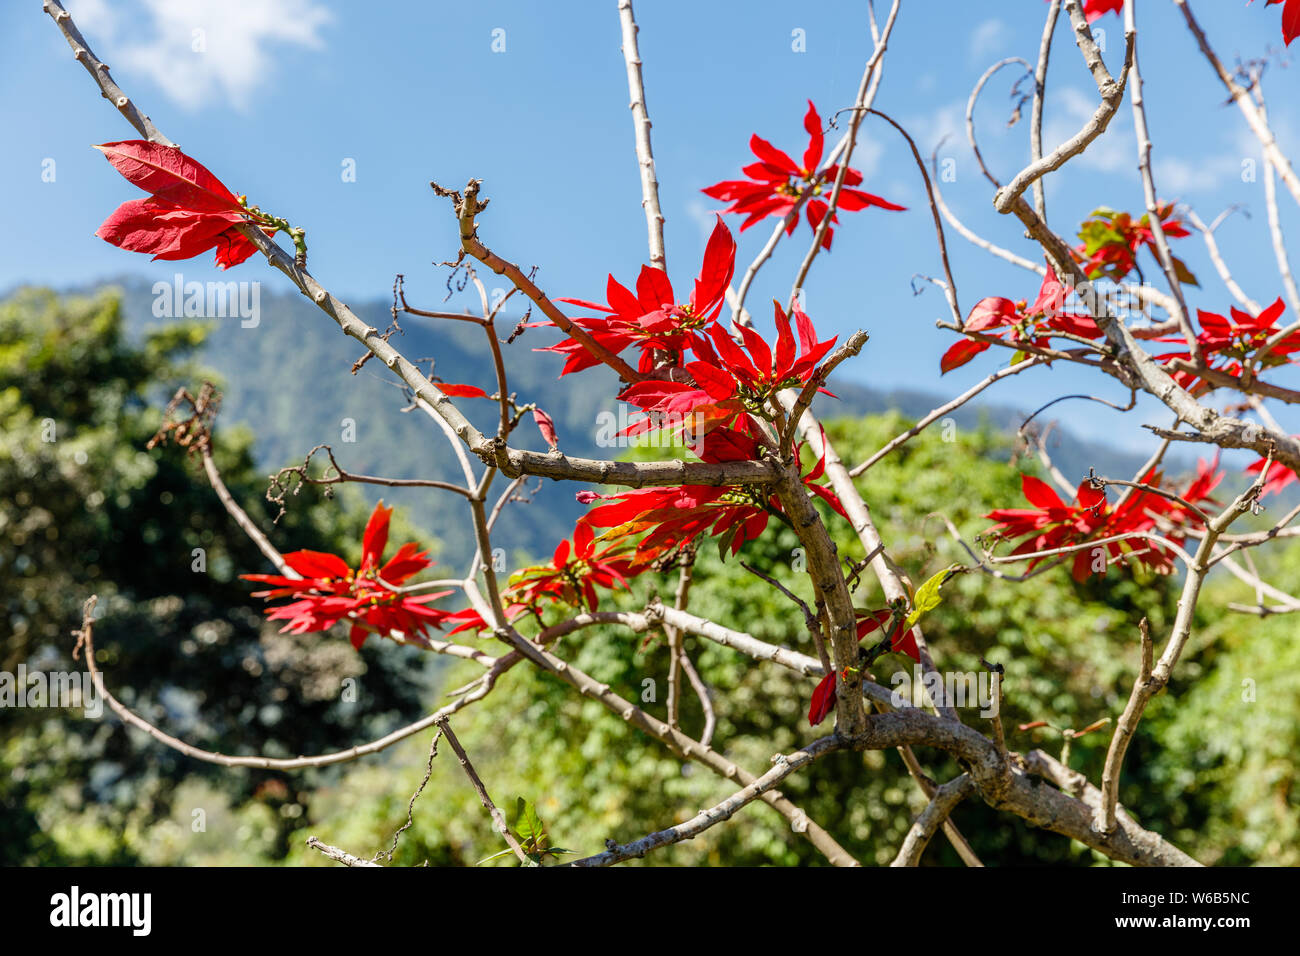 Arbre en fleurs poinsettia rouge, ciel bleu sur l'arrière-plan. Bali, Indonésie. Banque D'Images